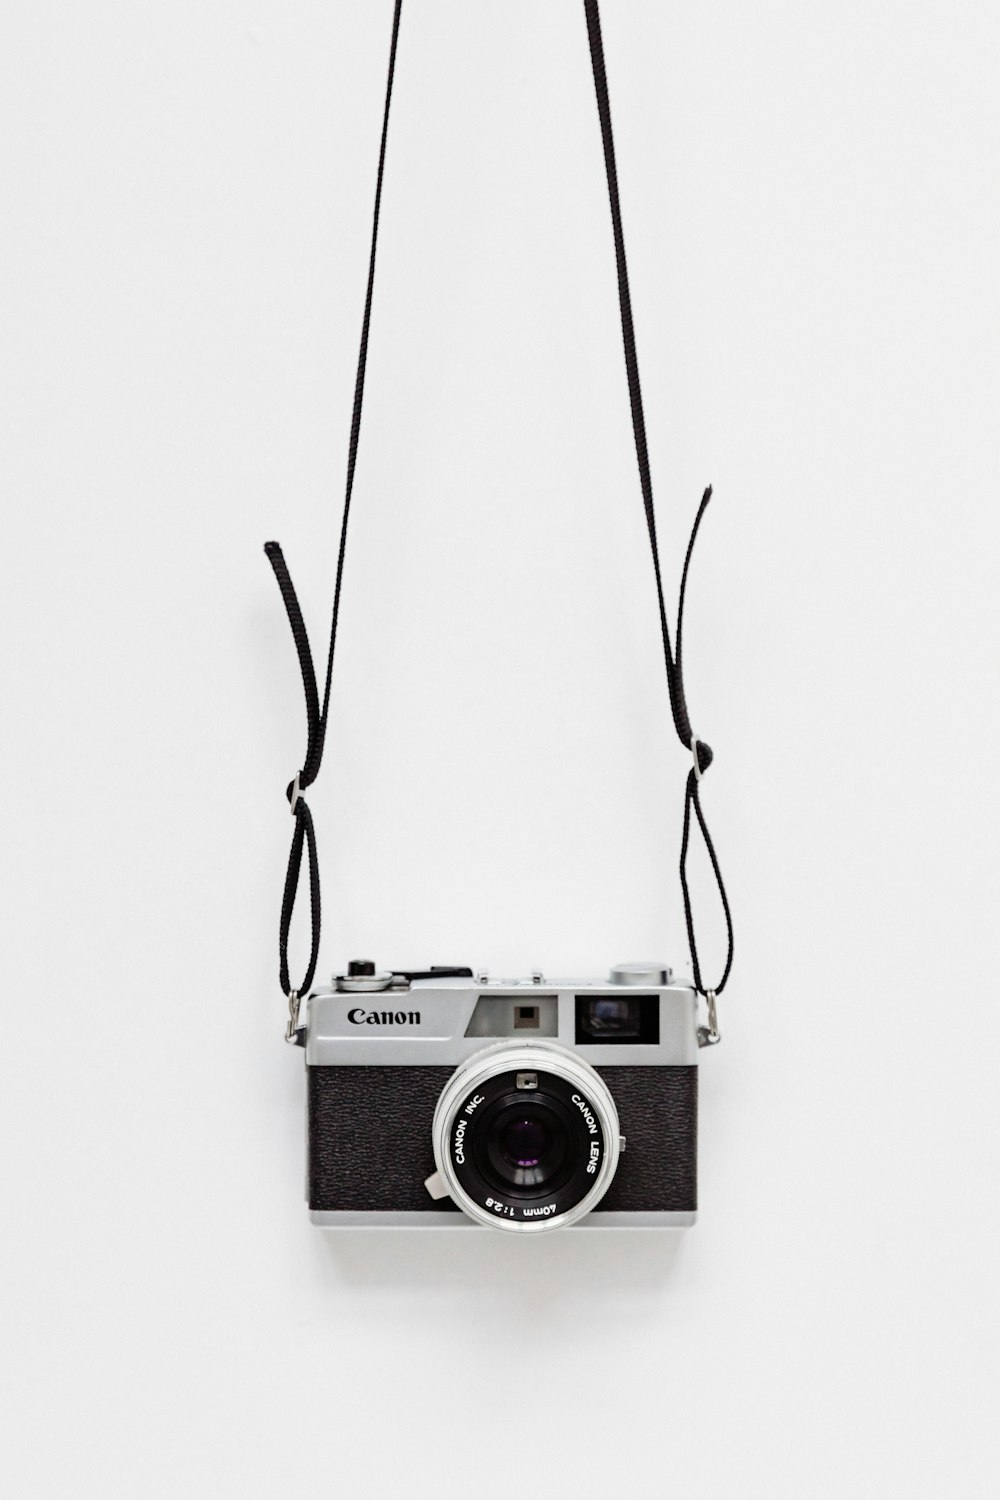 appareil photo Canon noir et gris sur surface blanche